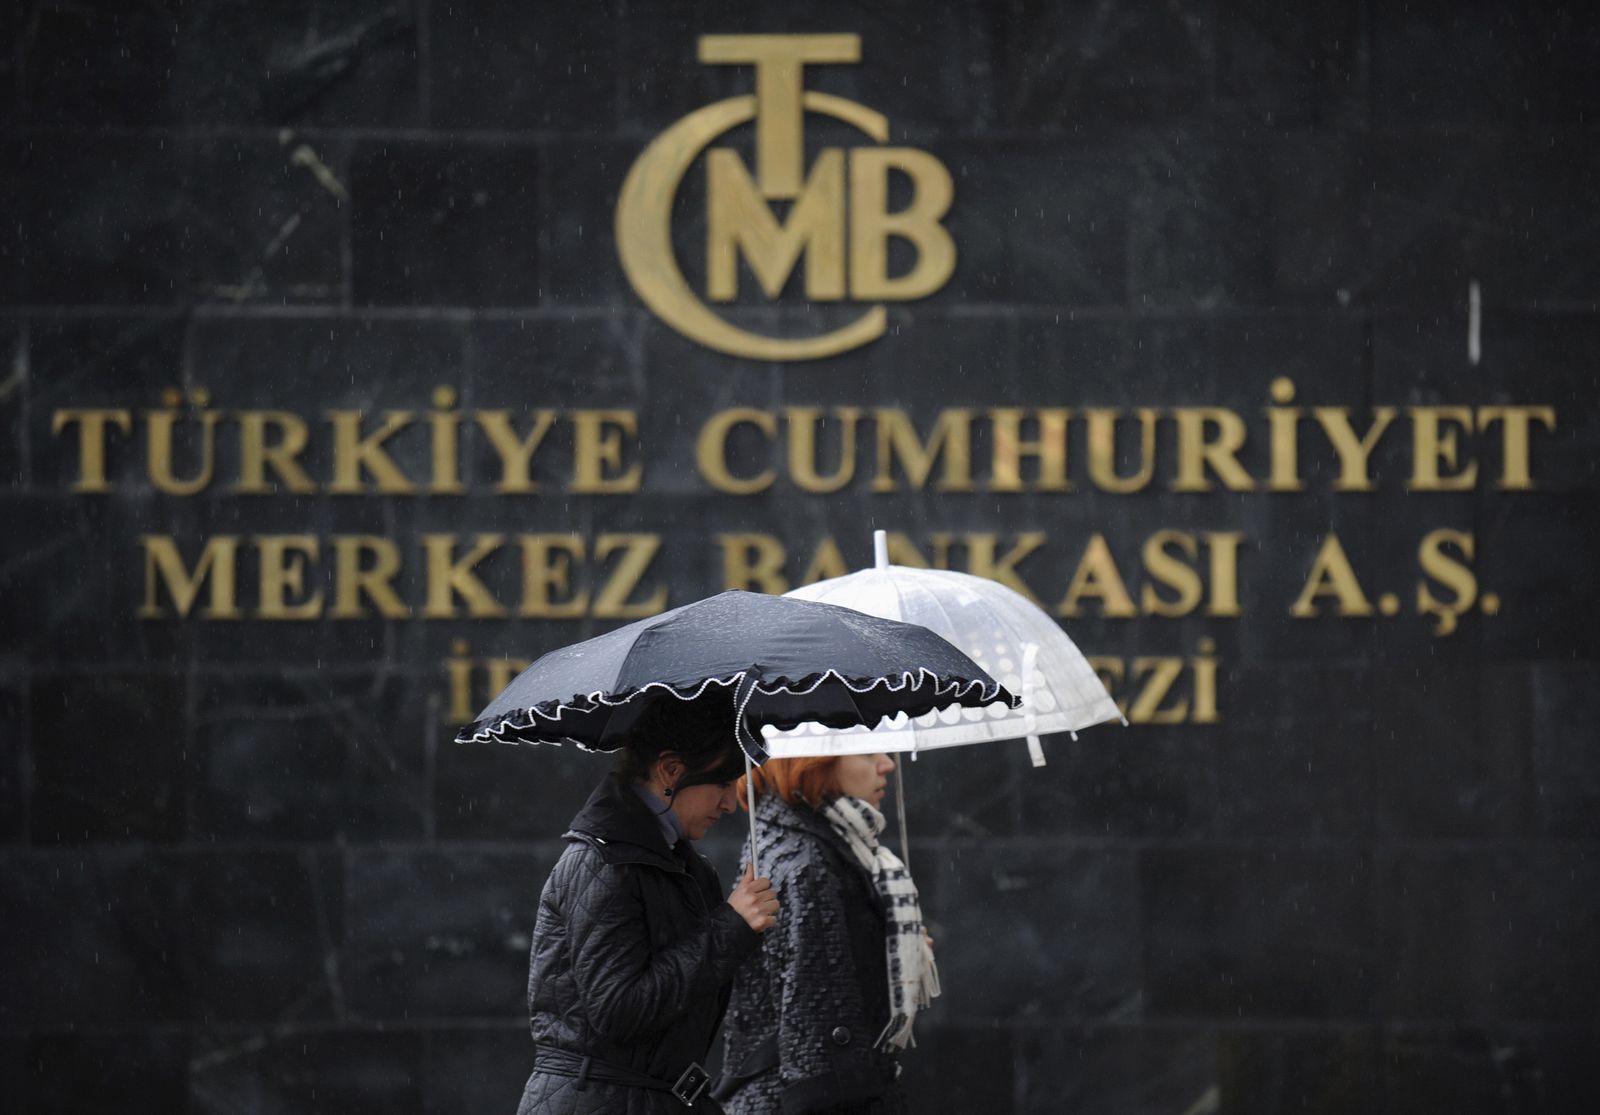 ارتفاع سيولة الليرة يربك جهود التشديد النقدي في تركيا